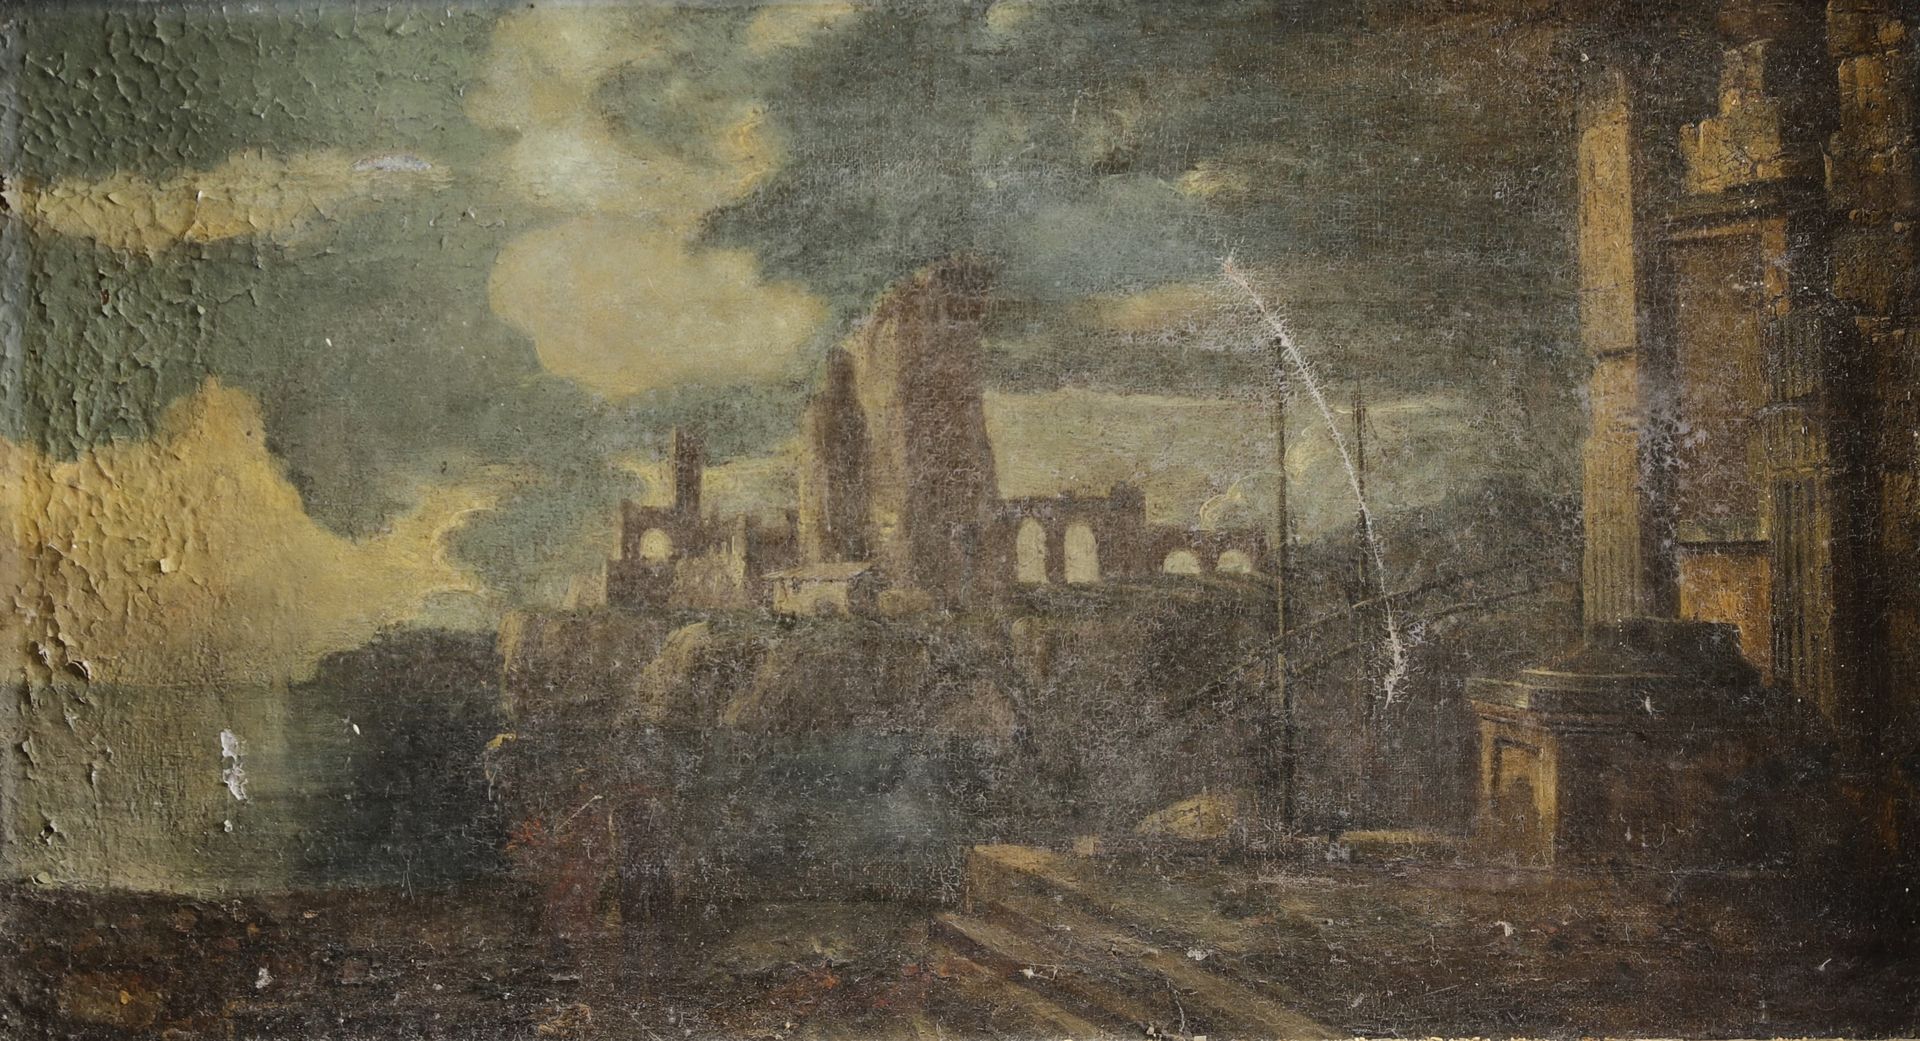 Null 罗马学校，17世纪。海景与废墟。布面油画。34 x 60 cm (已损坏，待修复)